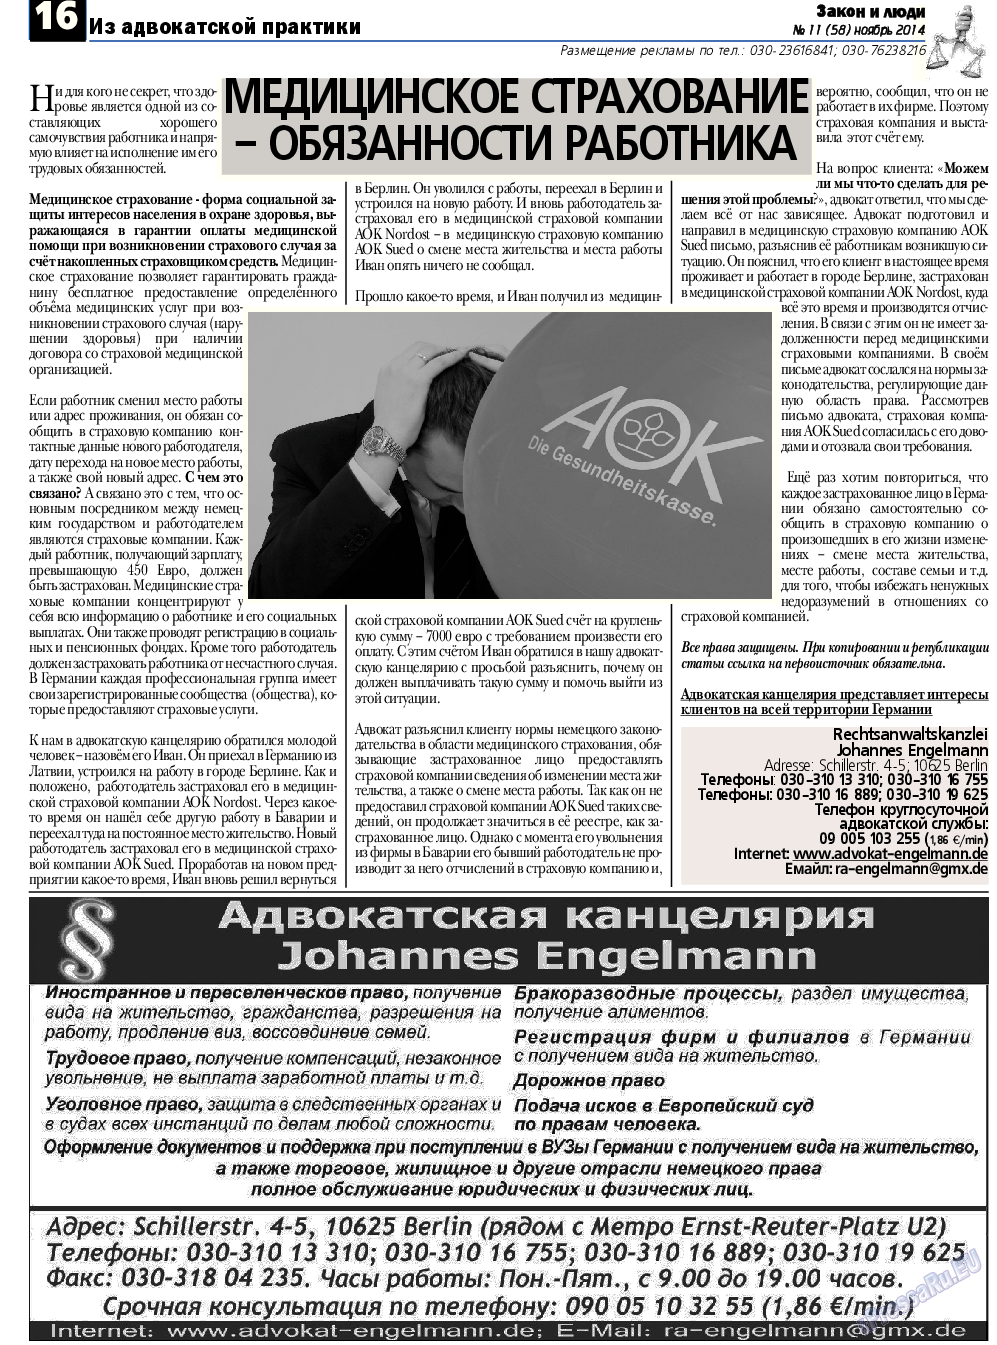 Закон и люди, газета. 2014 №11 стр.16